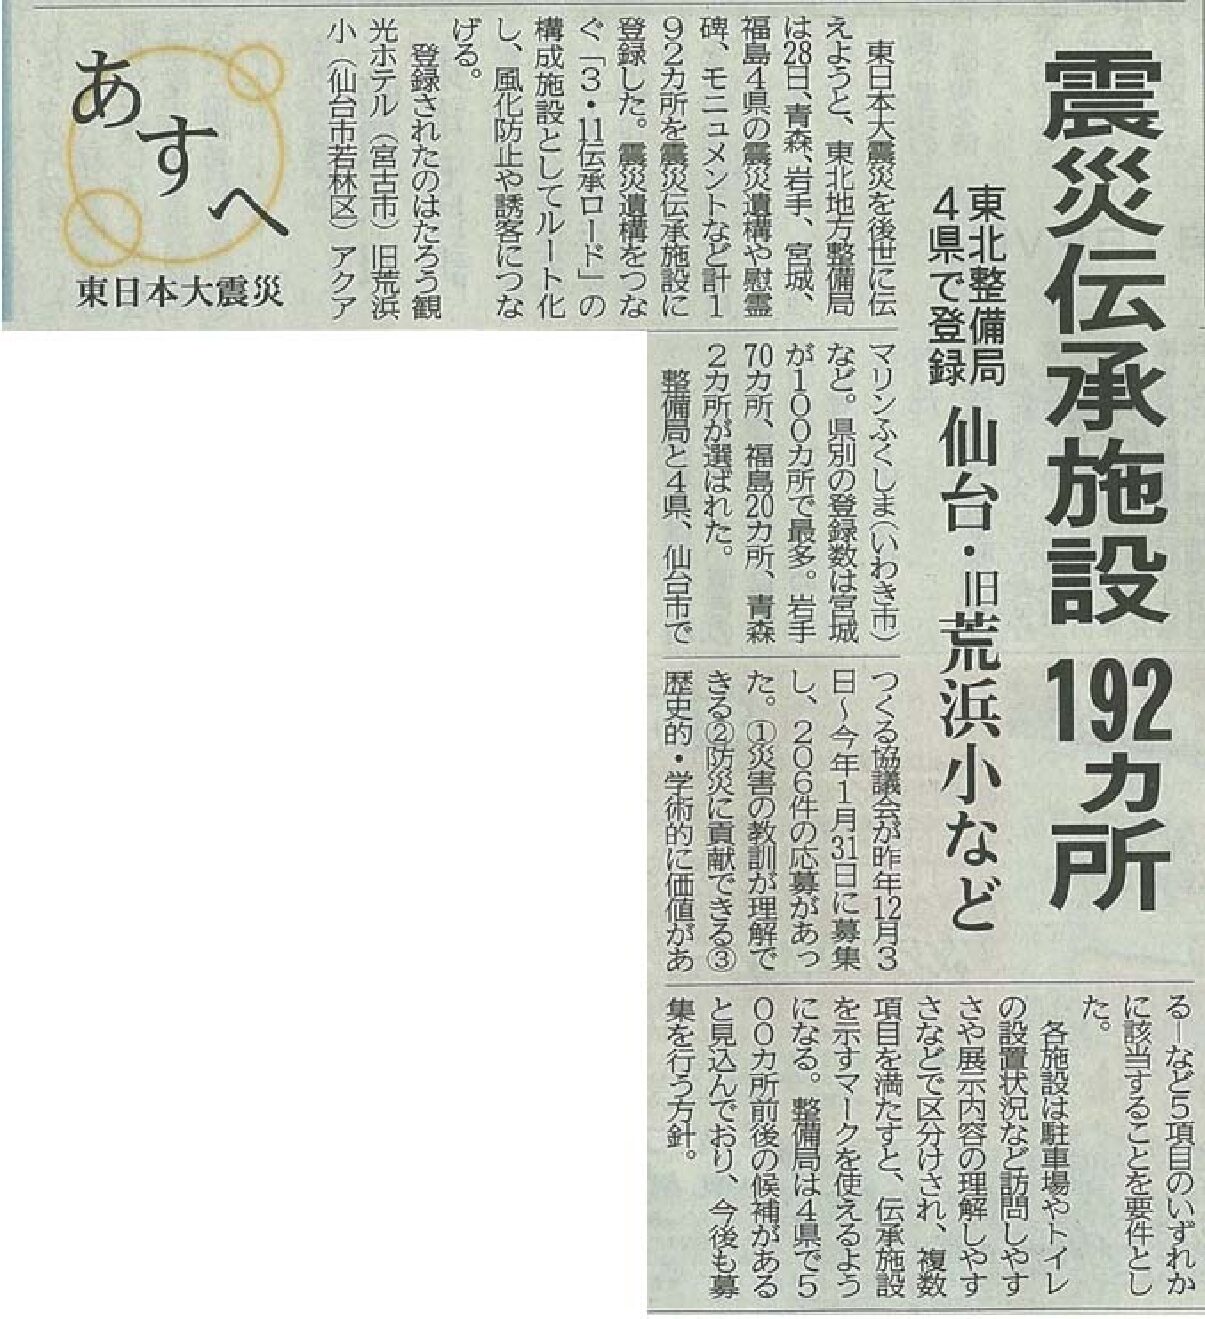 2019/3/29【河北新報】震災伝承施設192ヵ所